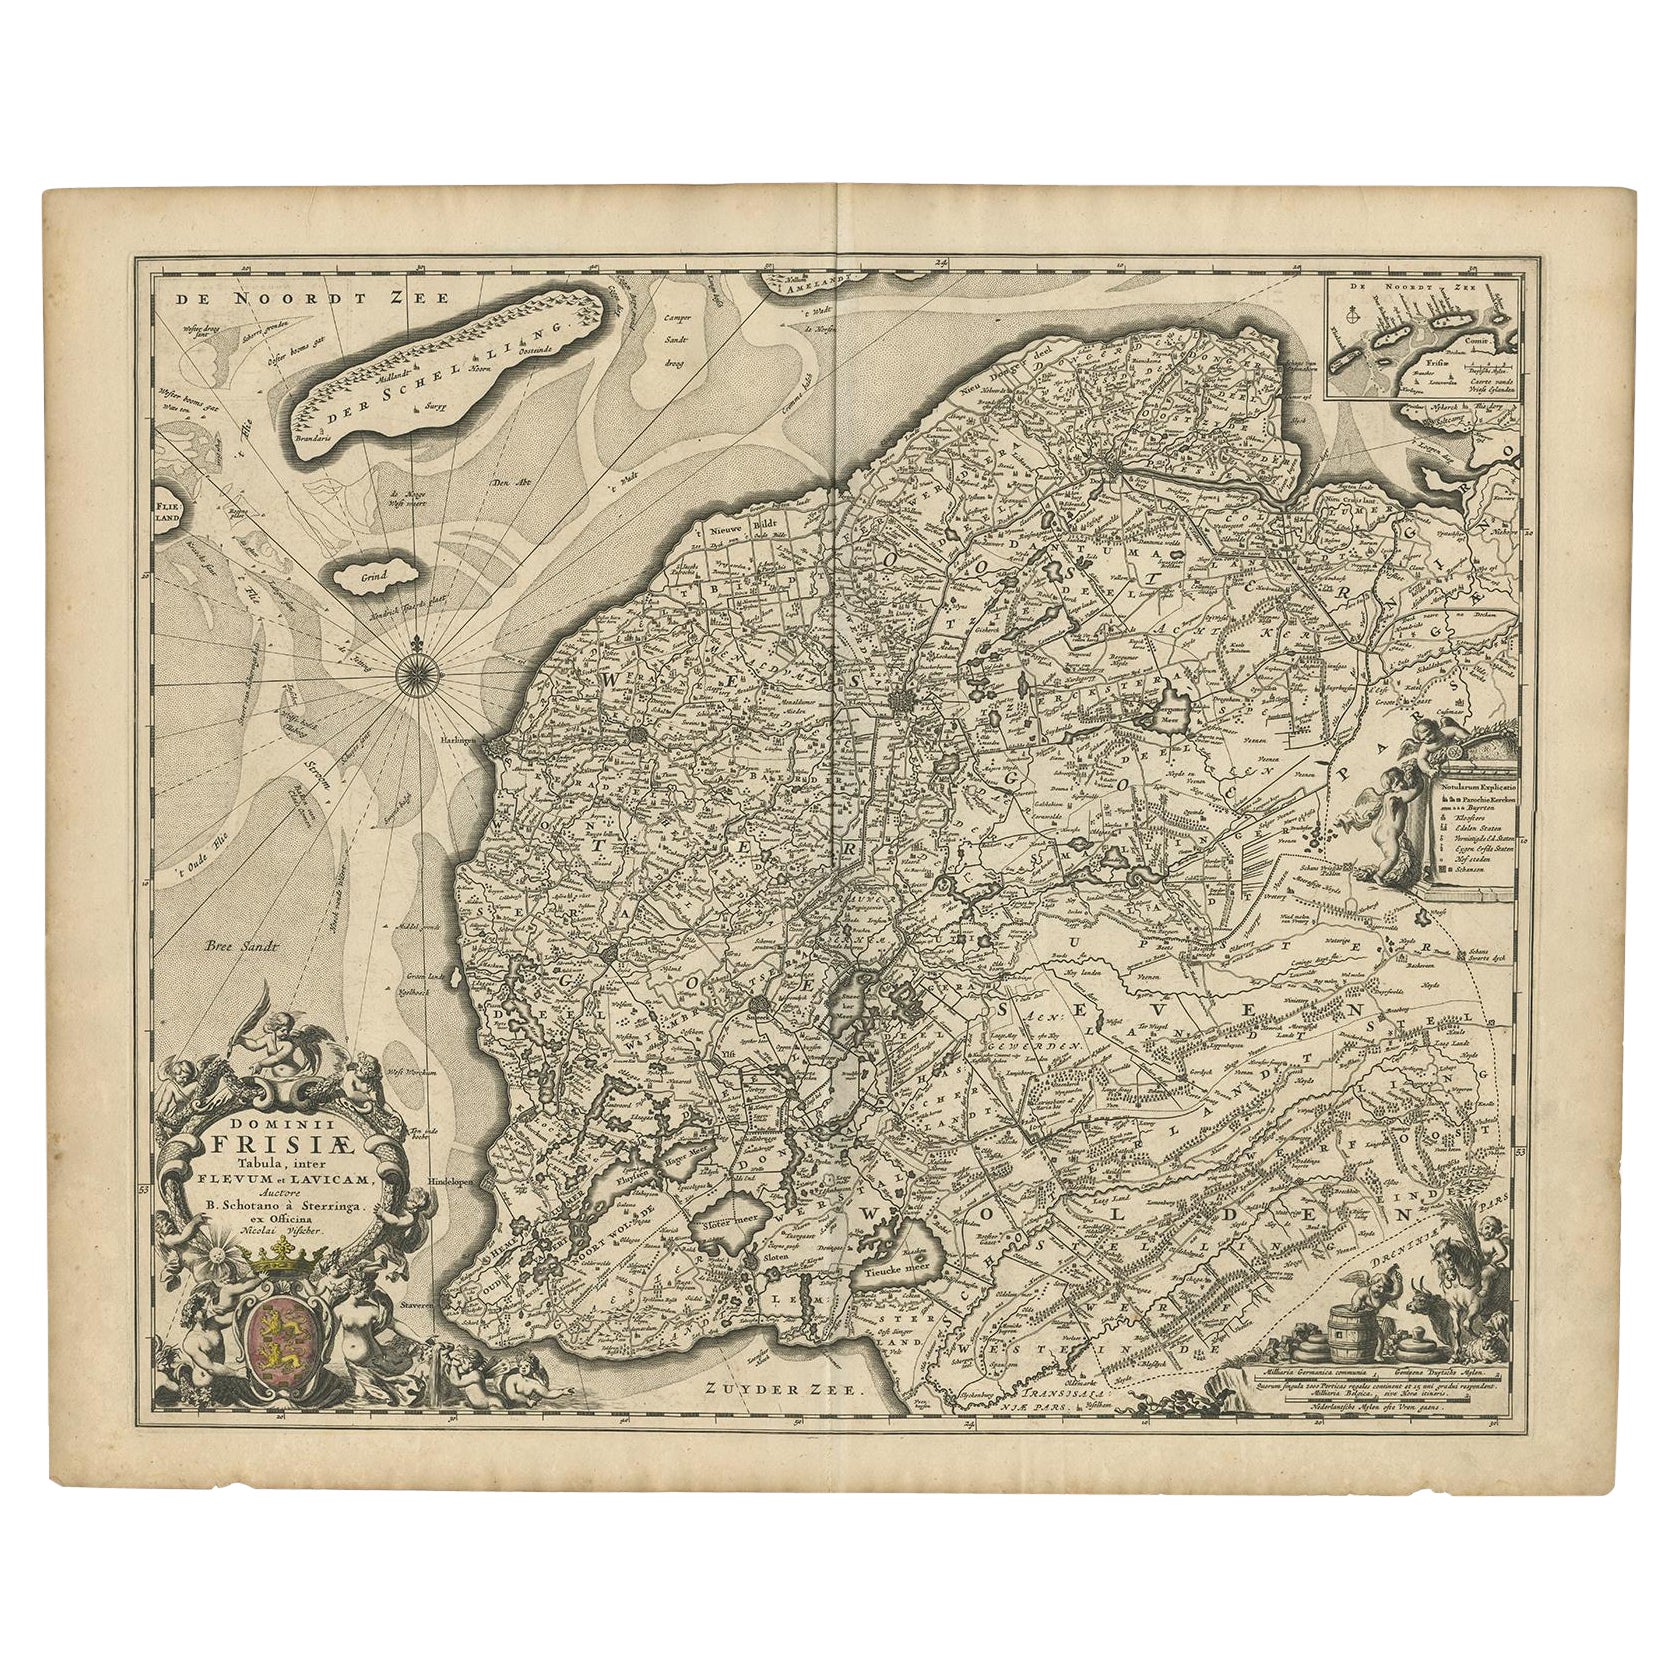 Schöne erste Staatskarte von Friesland, Niederlande, um 1665